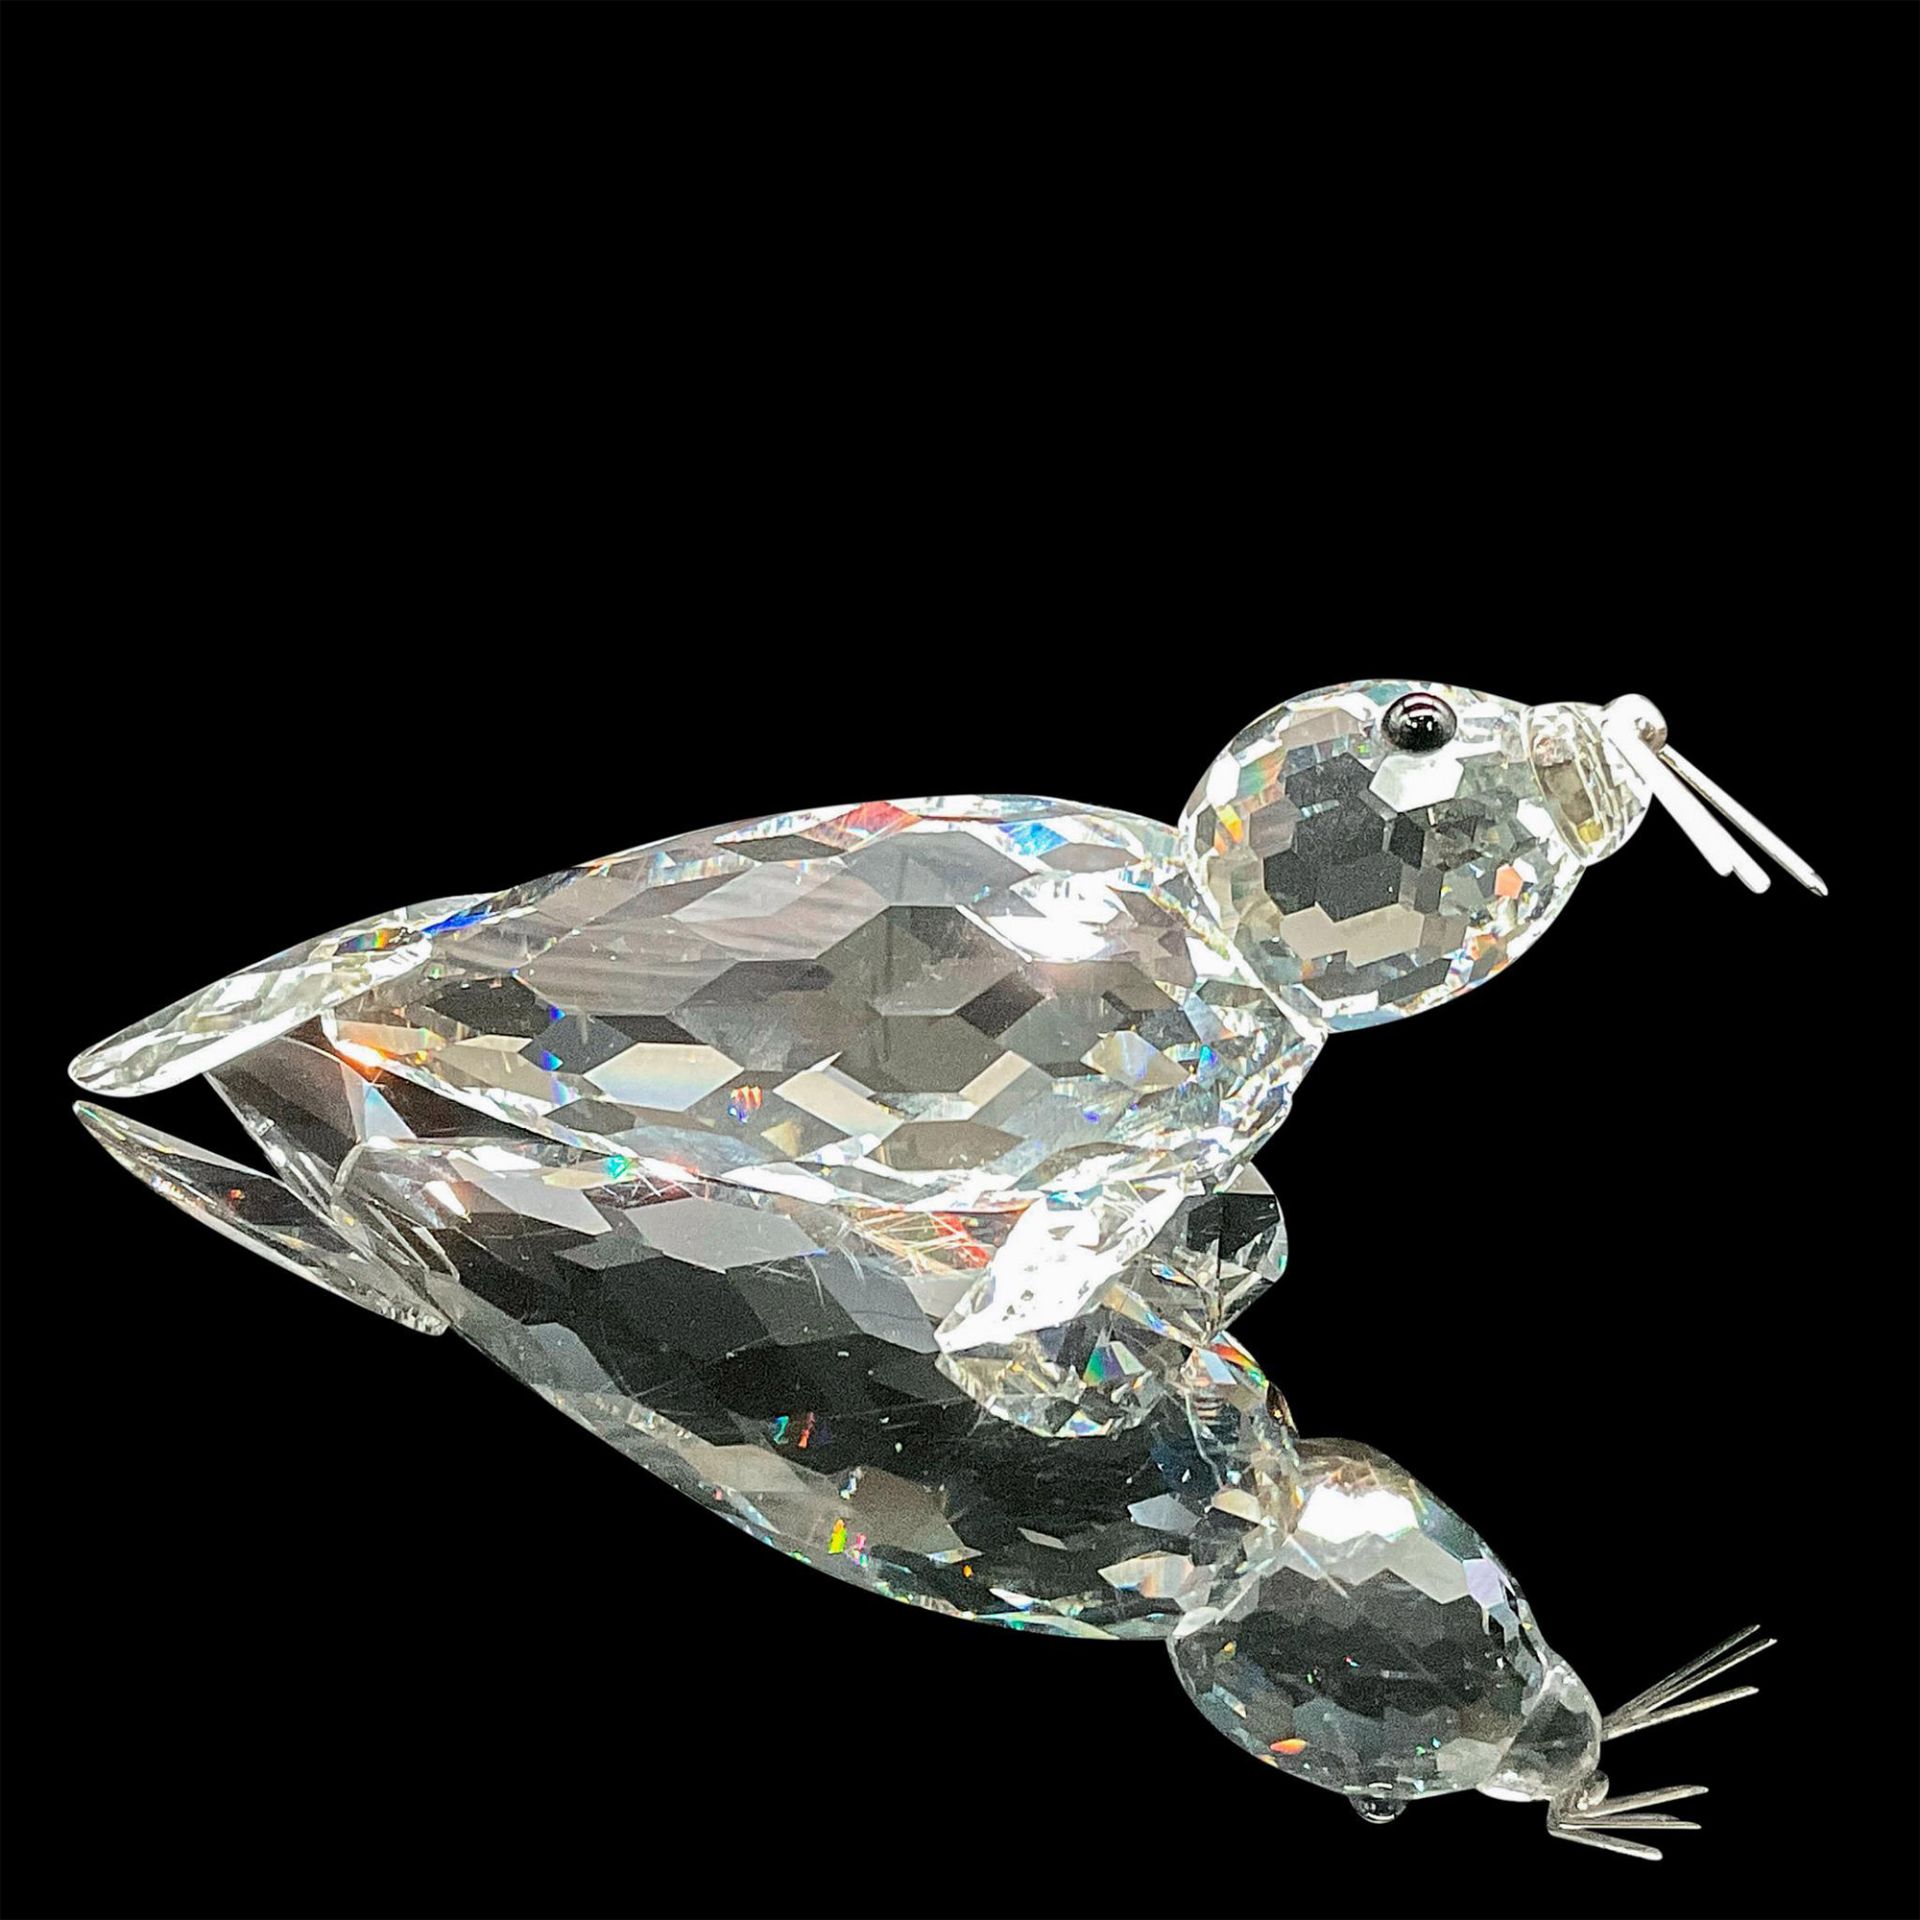 Swarovski Crystal Figurine, Large Seal - Image 2 of 3